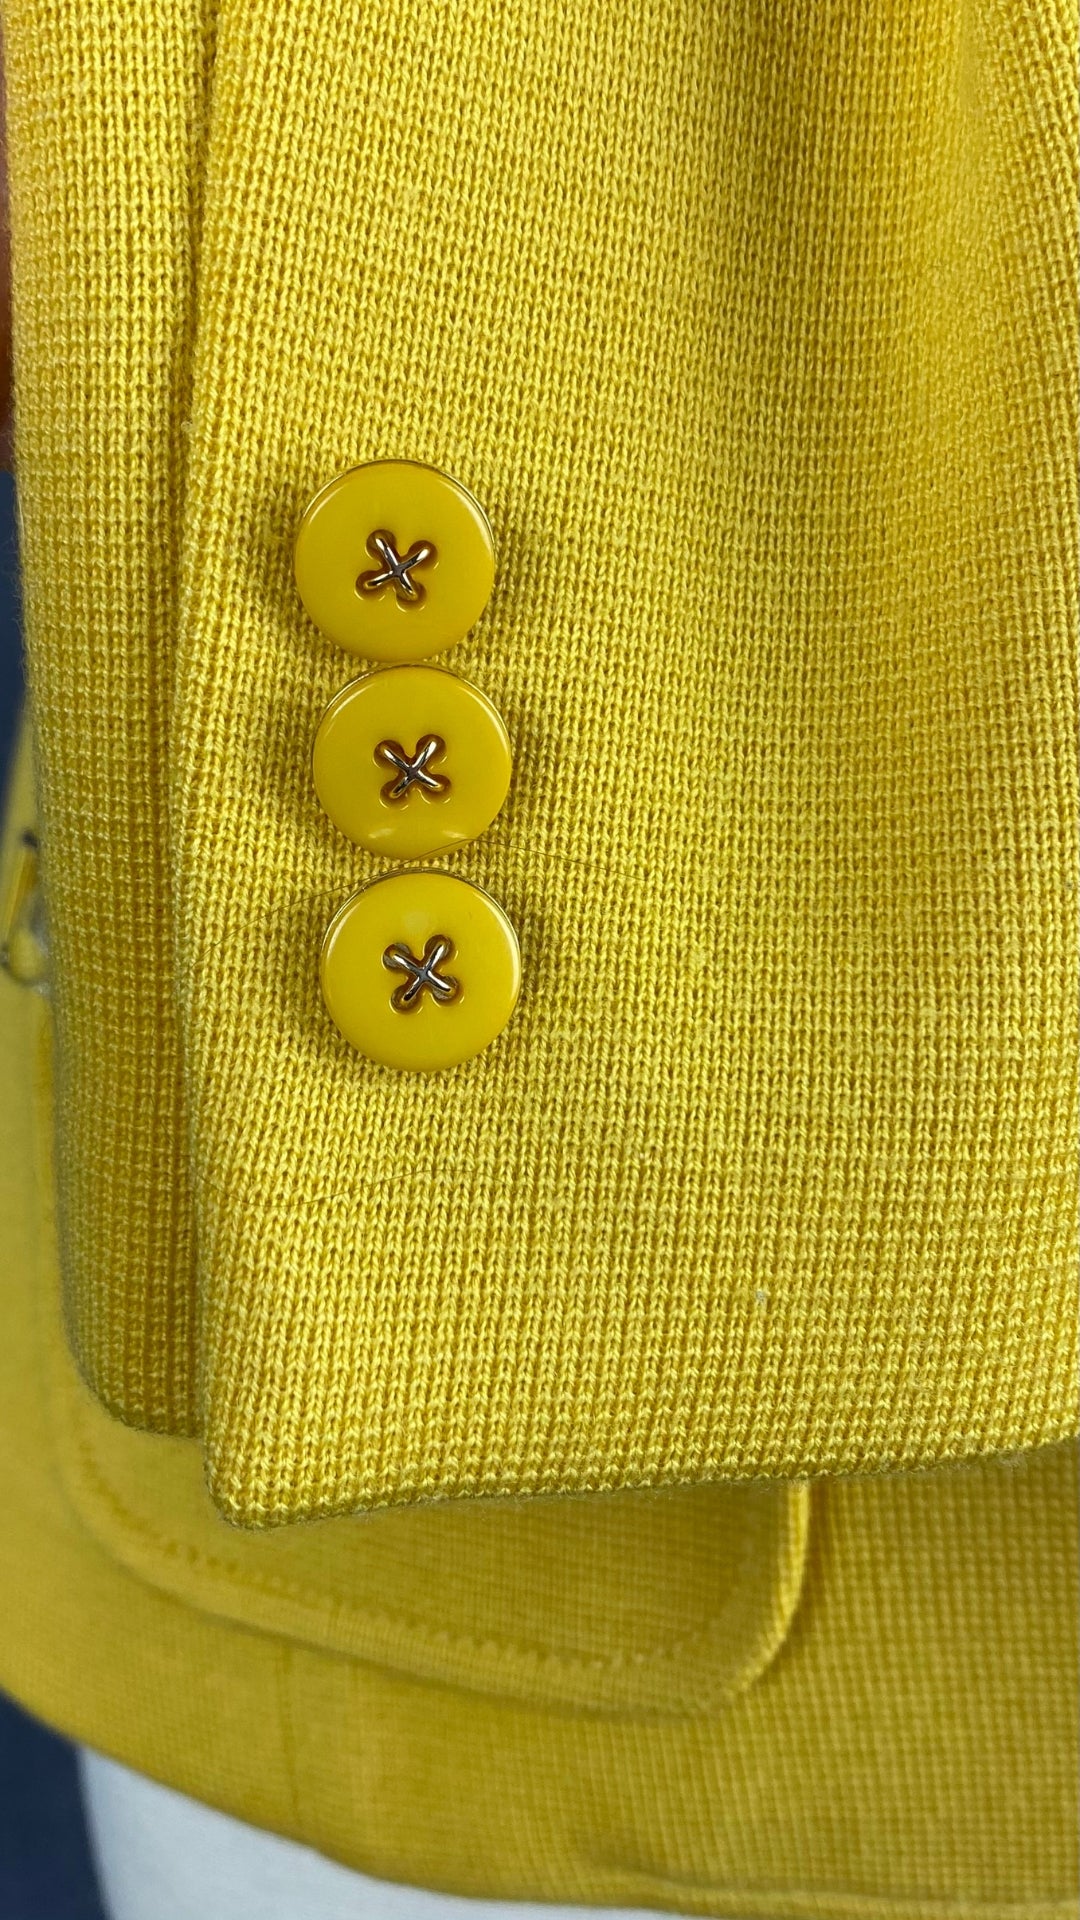 Veste style blazer jaune doré en laine Luisa Spagnoli, taille small. Vue des boutons à la manche.